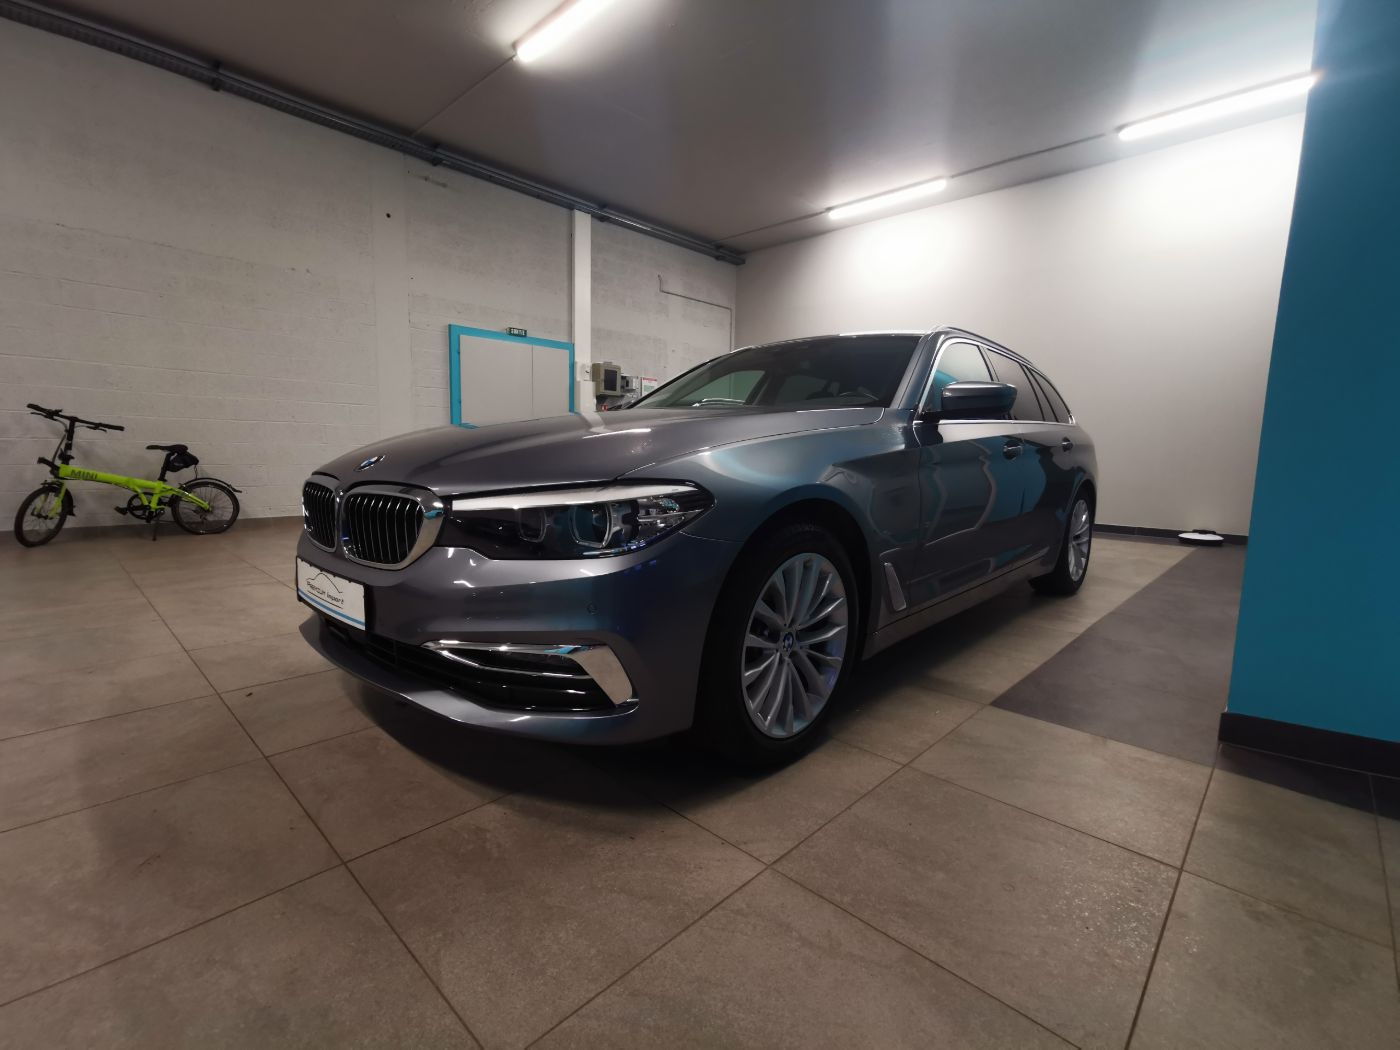 Lire la suite à propos de l’article BMW 520d xDrive Touring